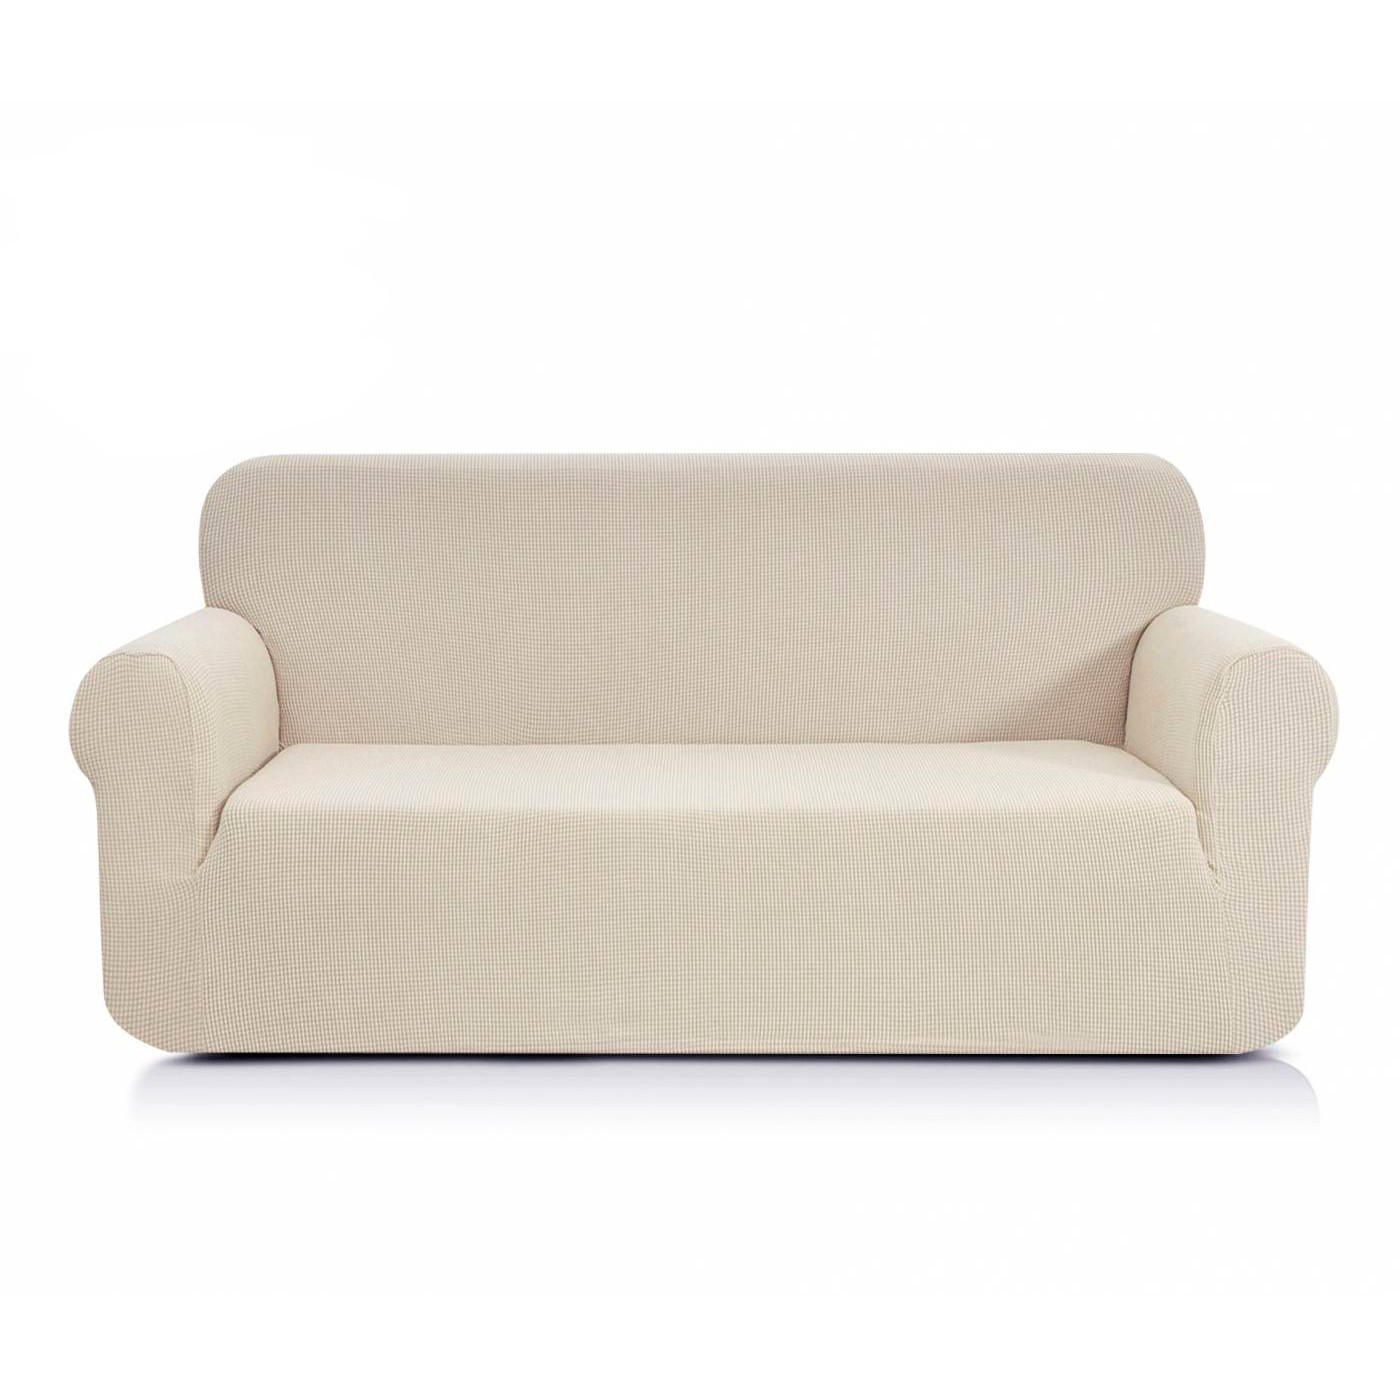 Чехол для дивана Моника цвет: молочный (Трехместный), размер Без наволочек sofi881463 Чехол для дивана Моника цвет: молочный (Трехместный) - фото 1